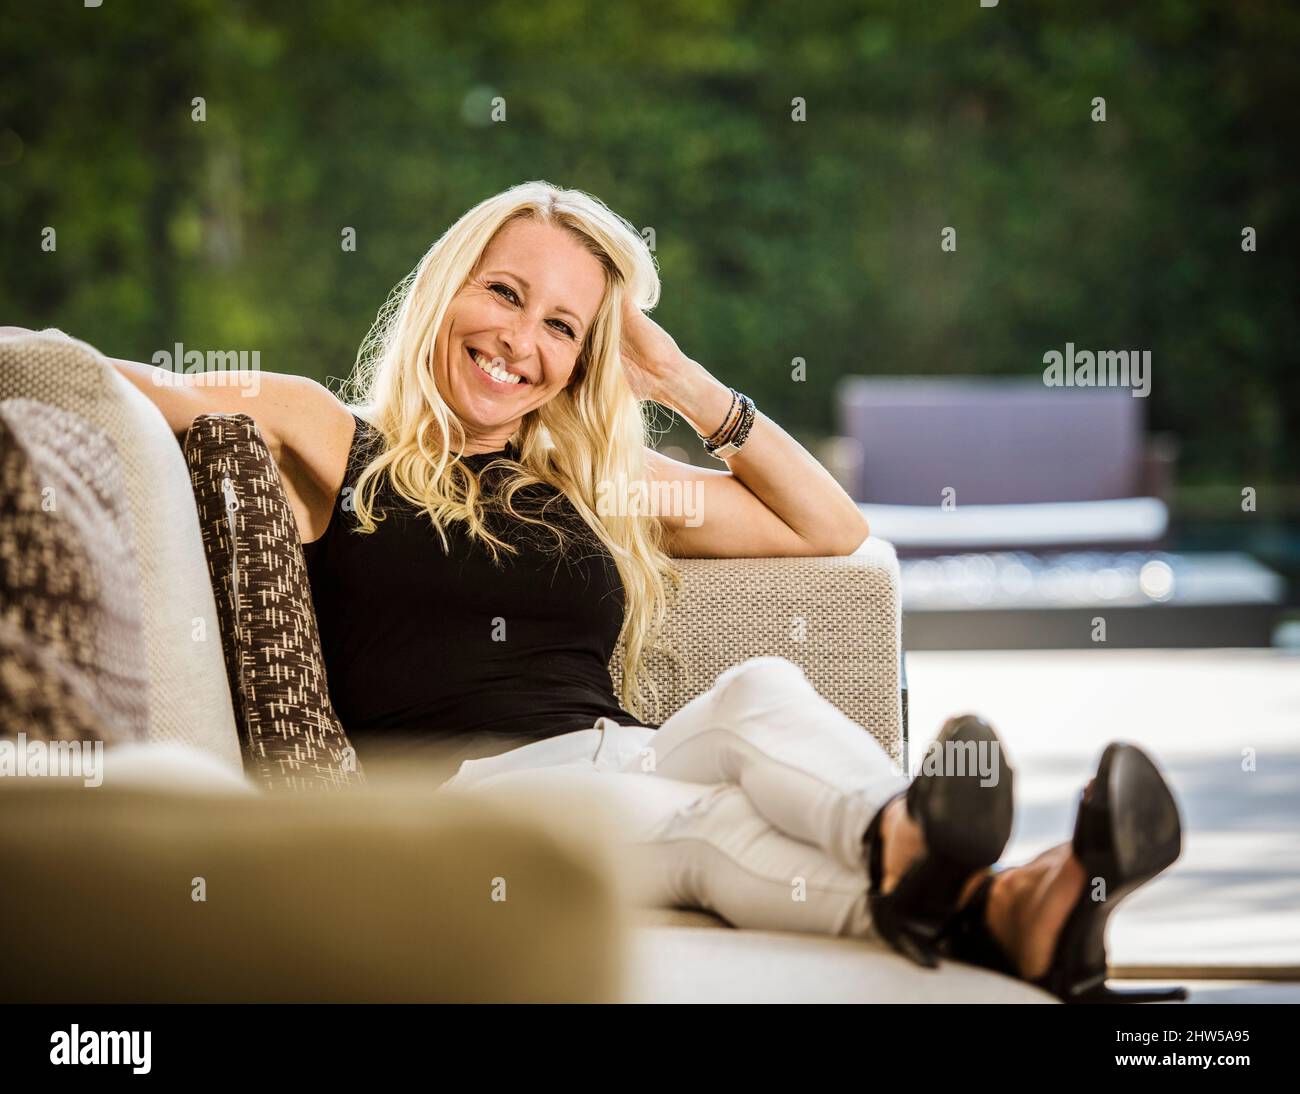 Portrait d'une femme blonde souriante assise sur un canapé Banque D'Images